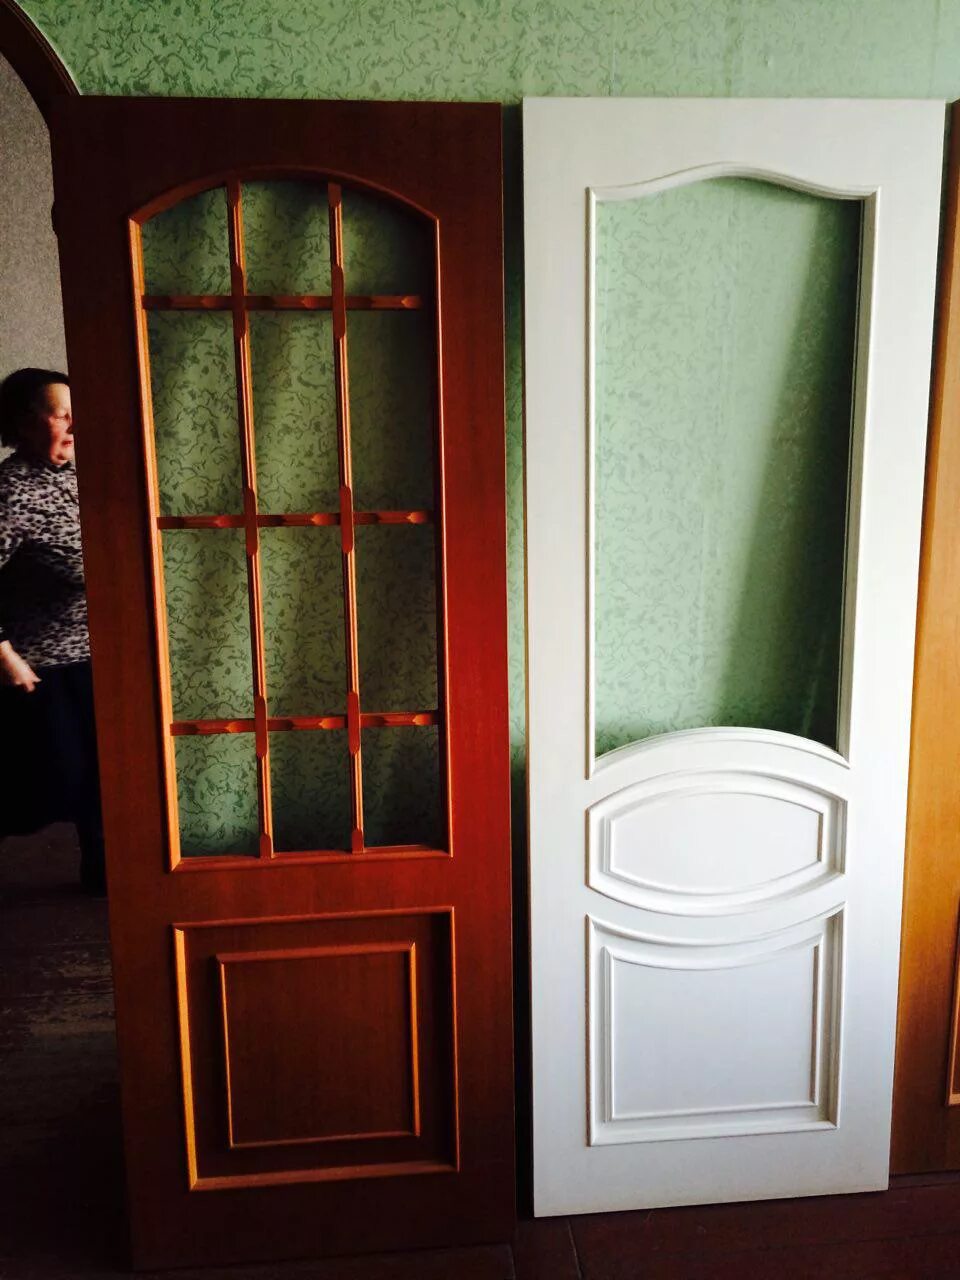 Покраска деревянных дверей. Перекраска деревянных дверей со стеклом. Перекрас дверей межкомнатных. Покраска дверей межкомнатных. Куплю старые межкомнатные двери